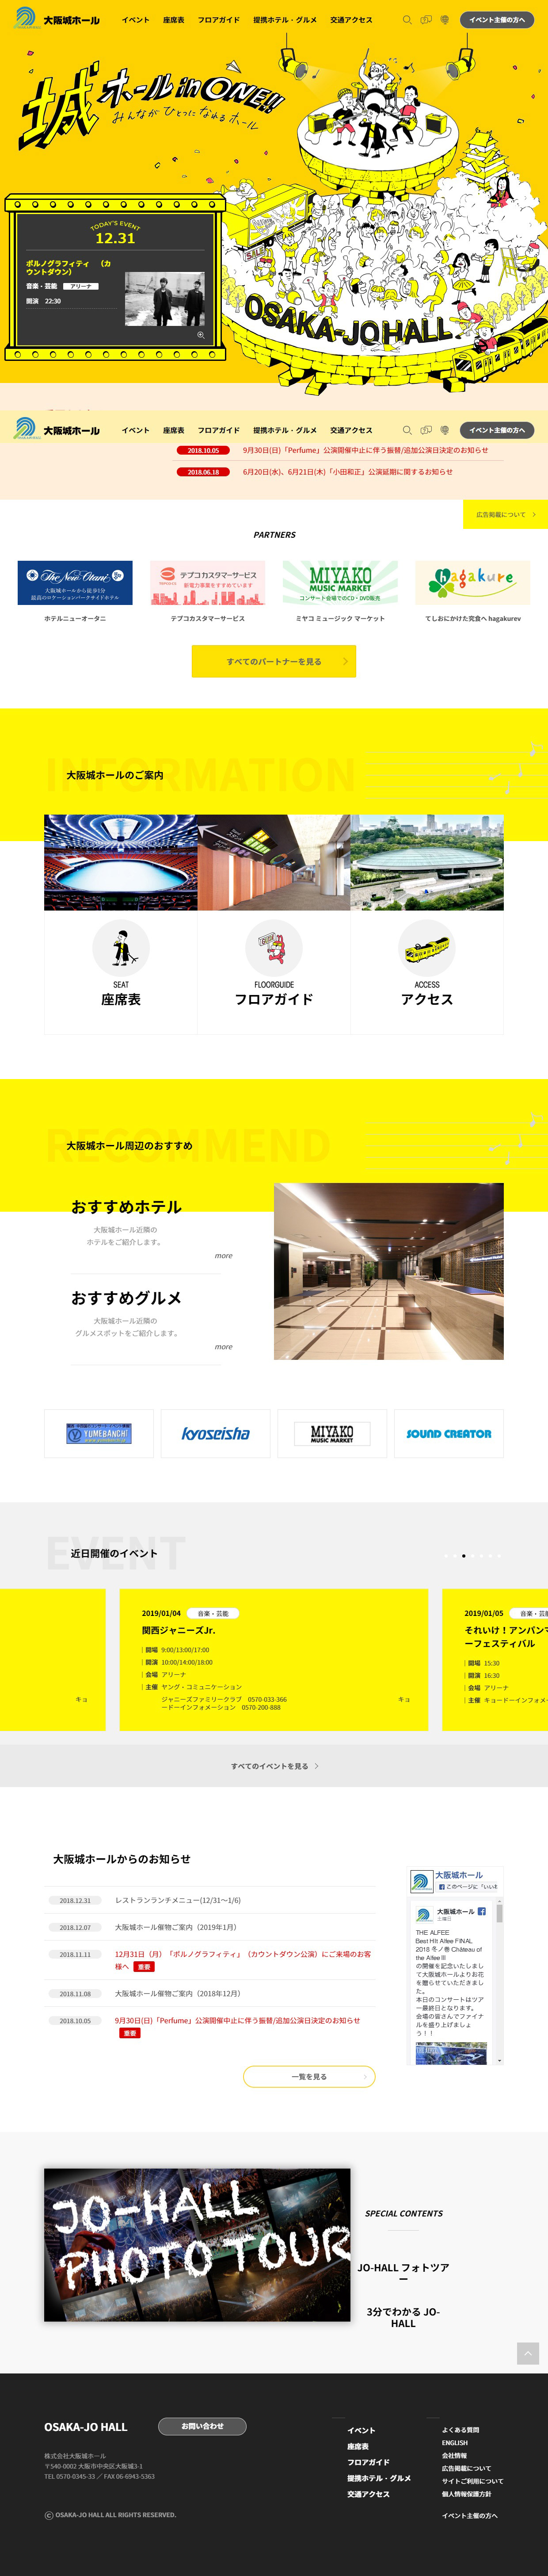 大阪城ホール Sankou Webデザインギャラリー 参考サイト集